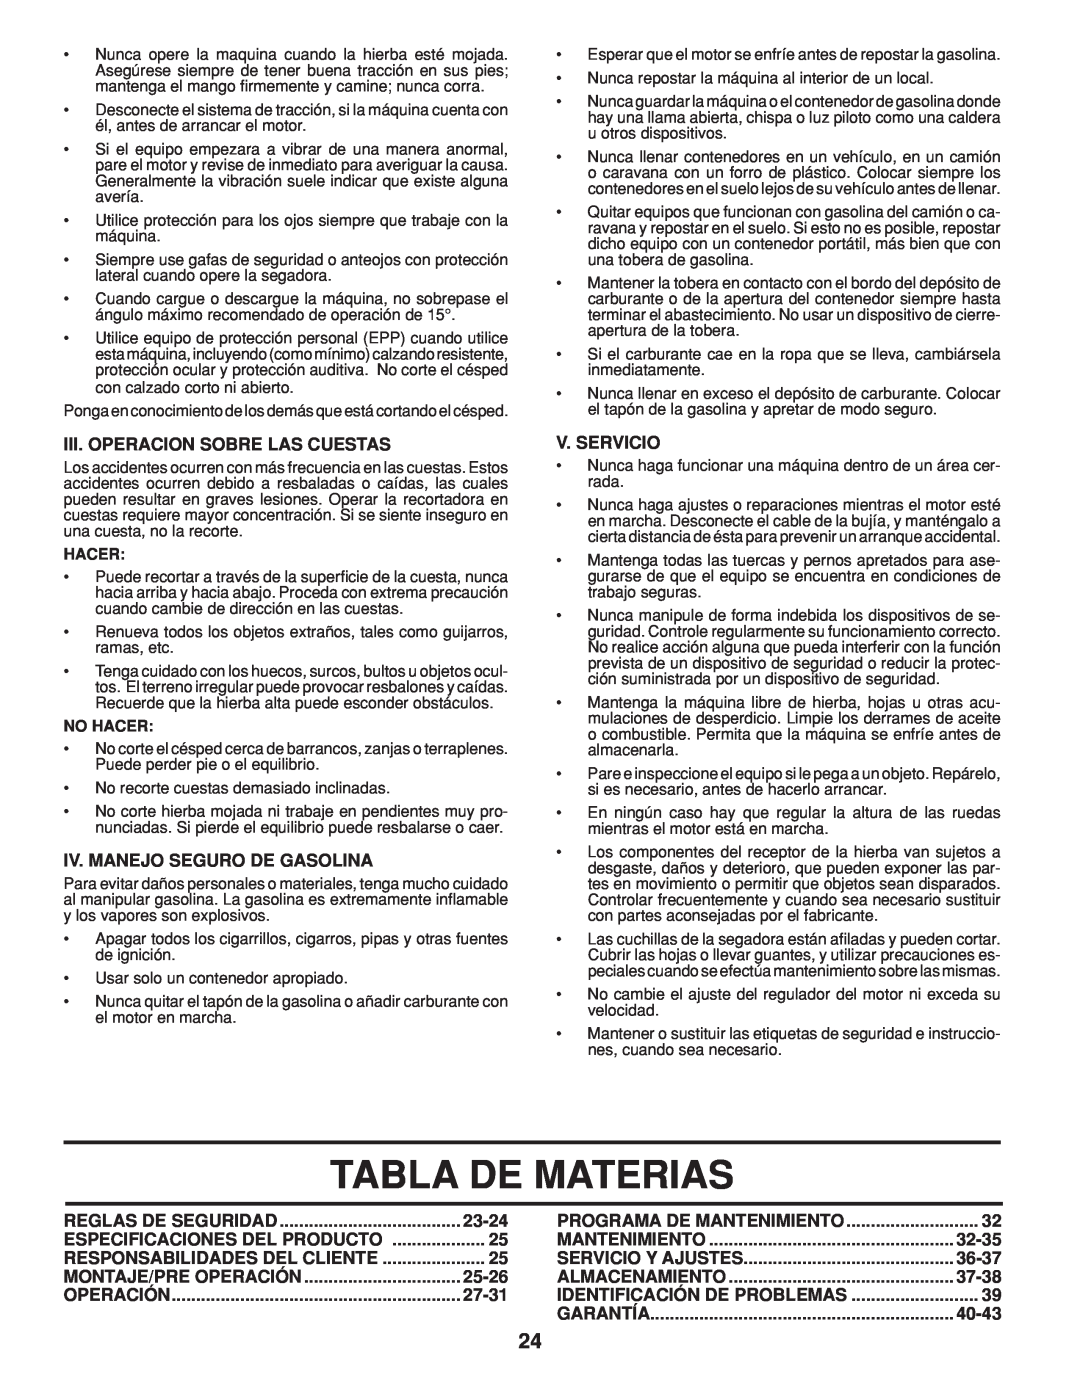 Husqvarna 961430096 Tabla De Materias, Iii. Operacion Sobre Las Cuestas, Iv. Manejo Seguro De Gasolina, V. Servicio, 23-24 